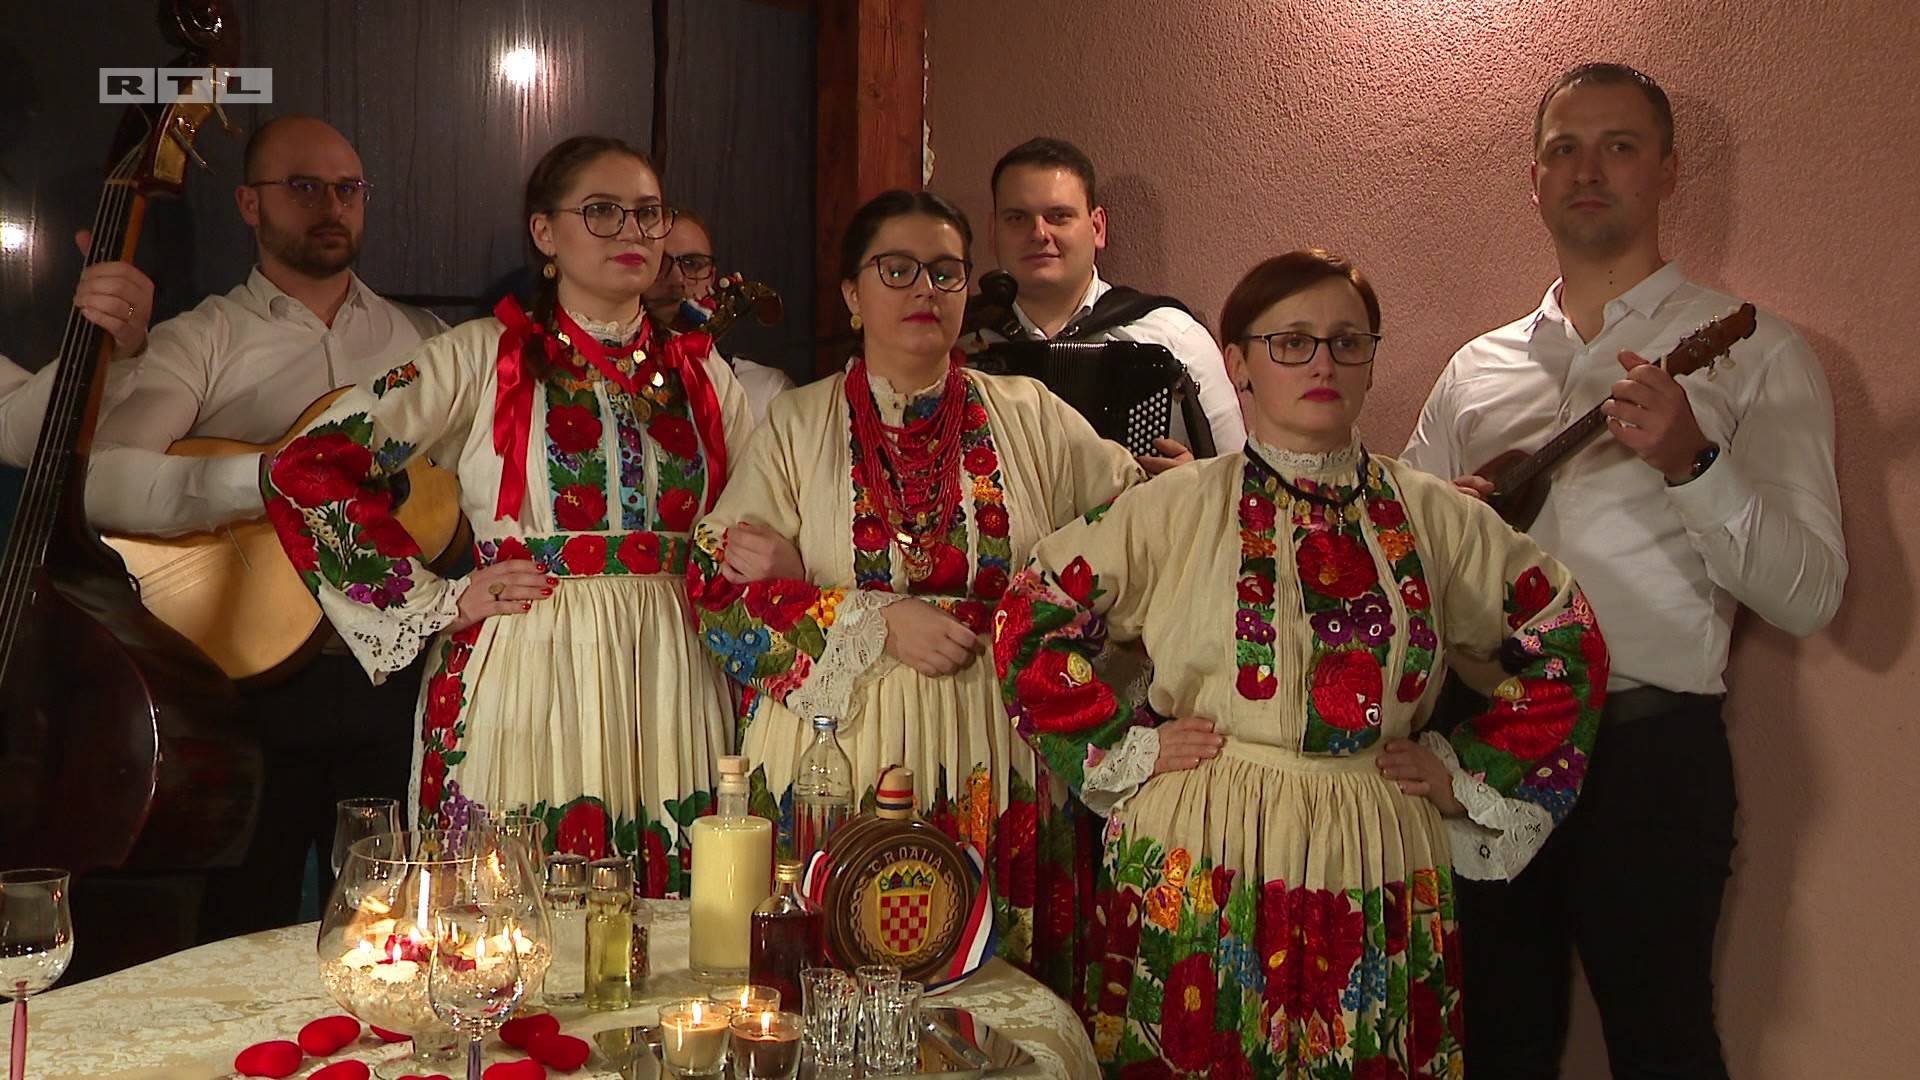 Ovotjednu 'Večeru za 5 na selu' otvorila Nikolina: Odala počast tradiciji i dobila dvije desetke!